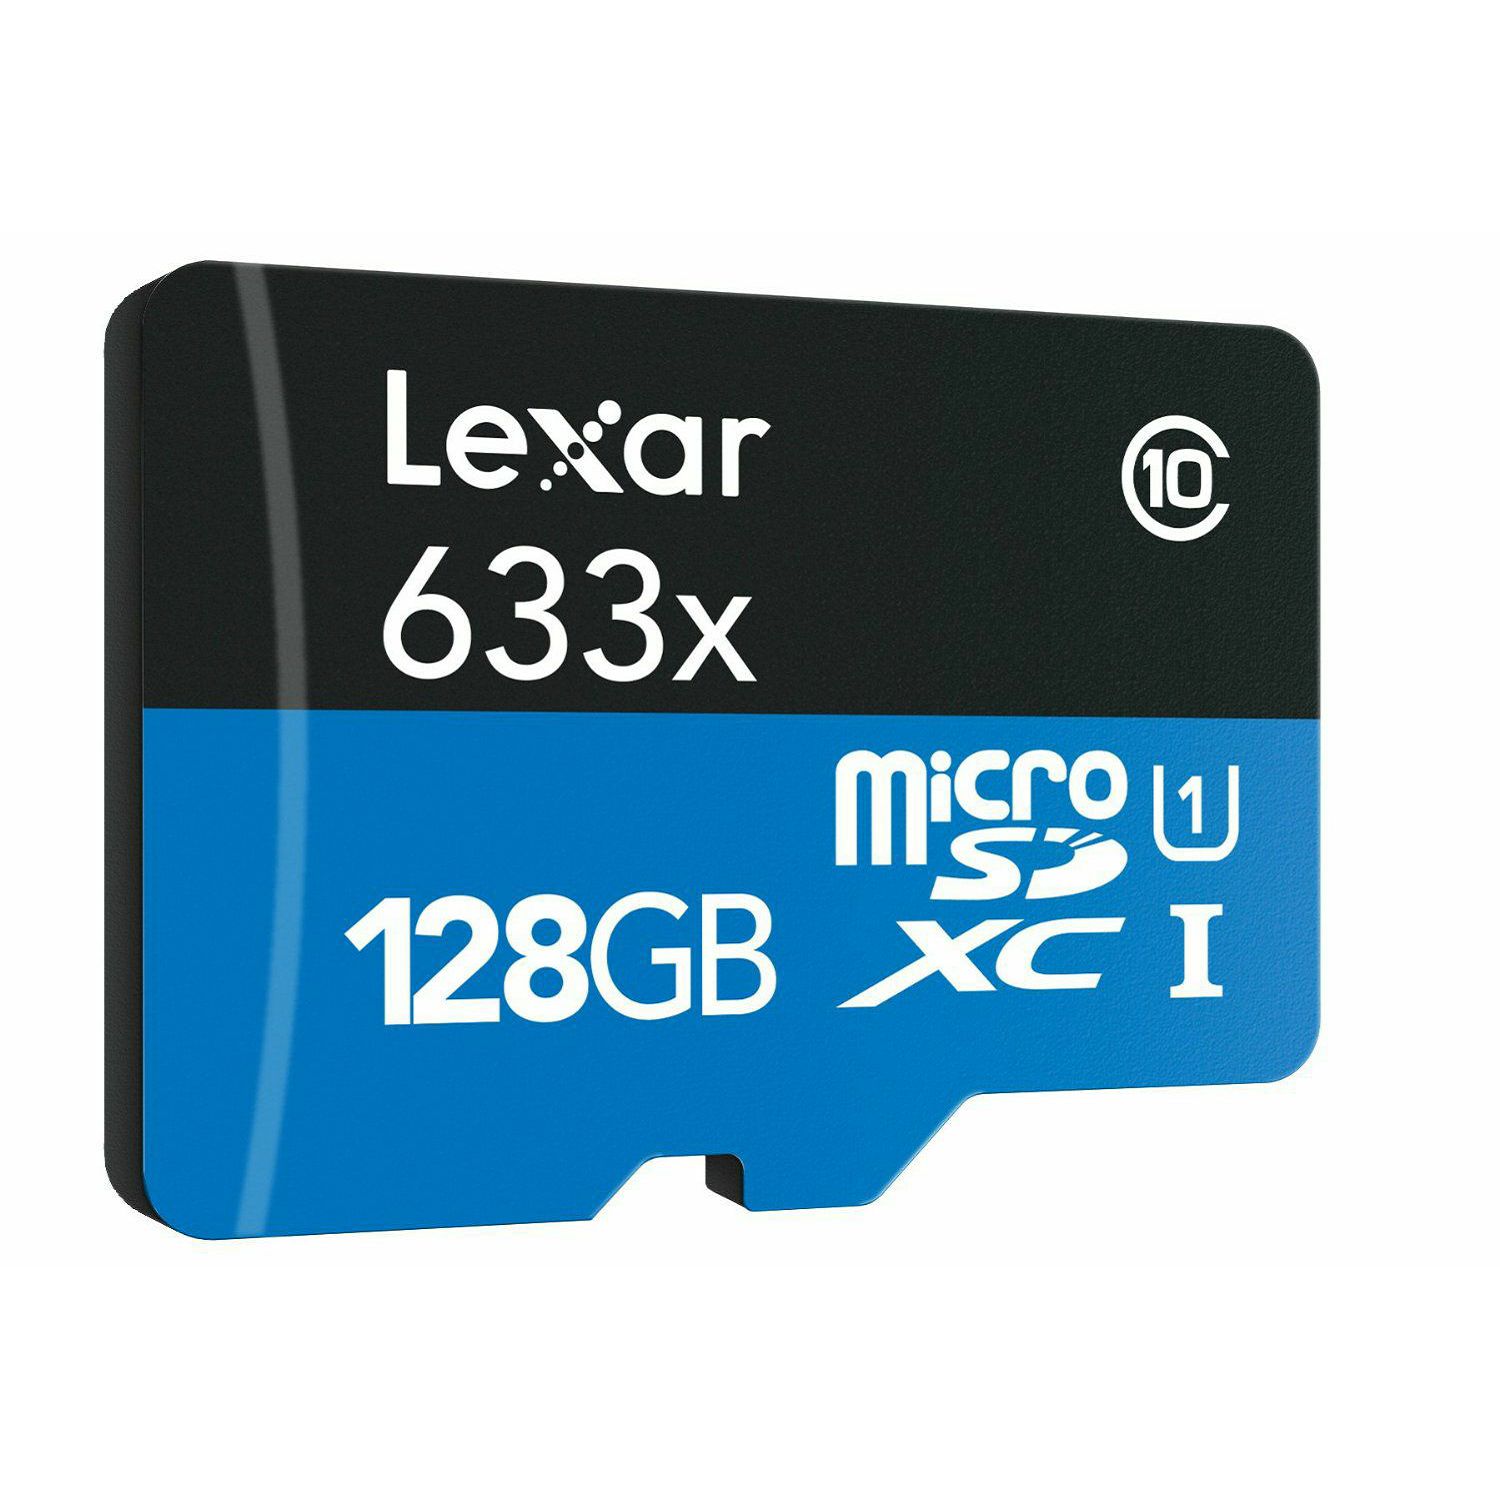 Lexar microSDXC 633x 95MB/s UHS-I 128GB memorijska kartica sa adapterom LSDMI128BBEU633A